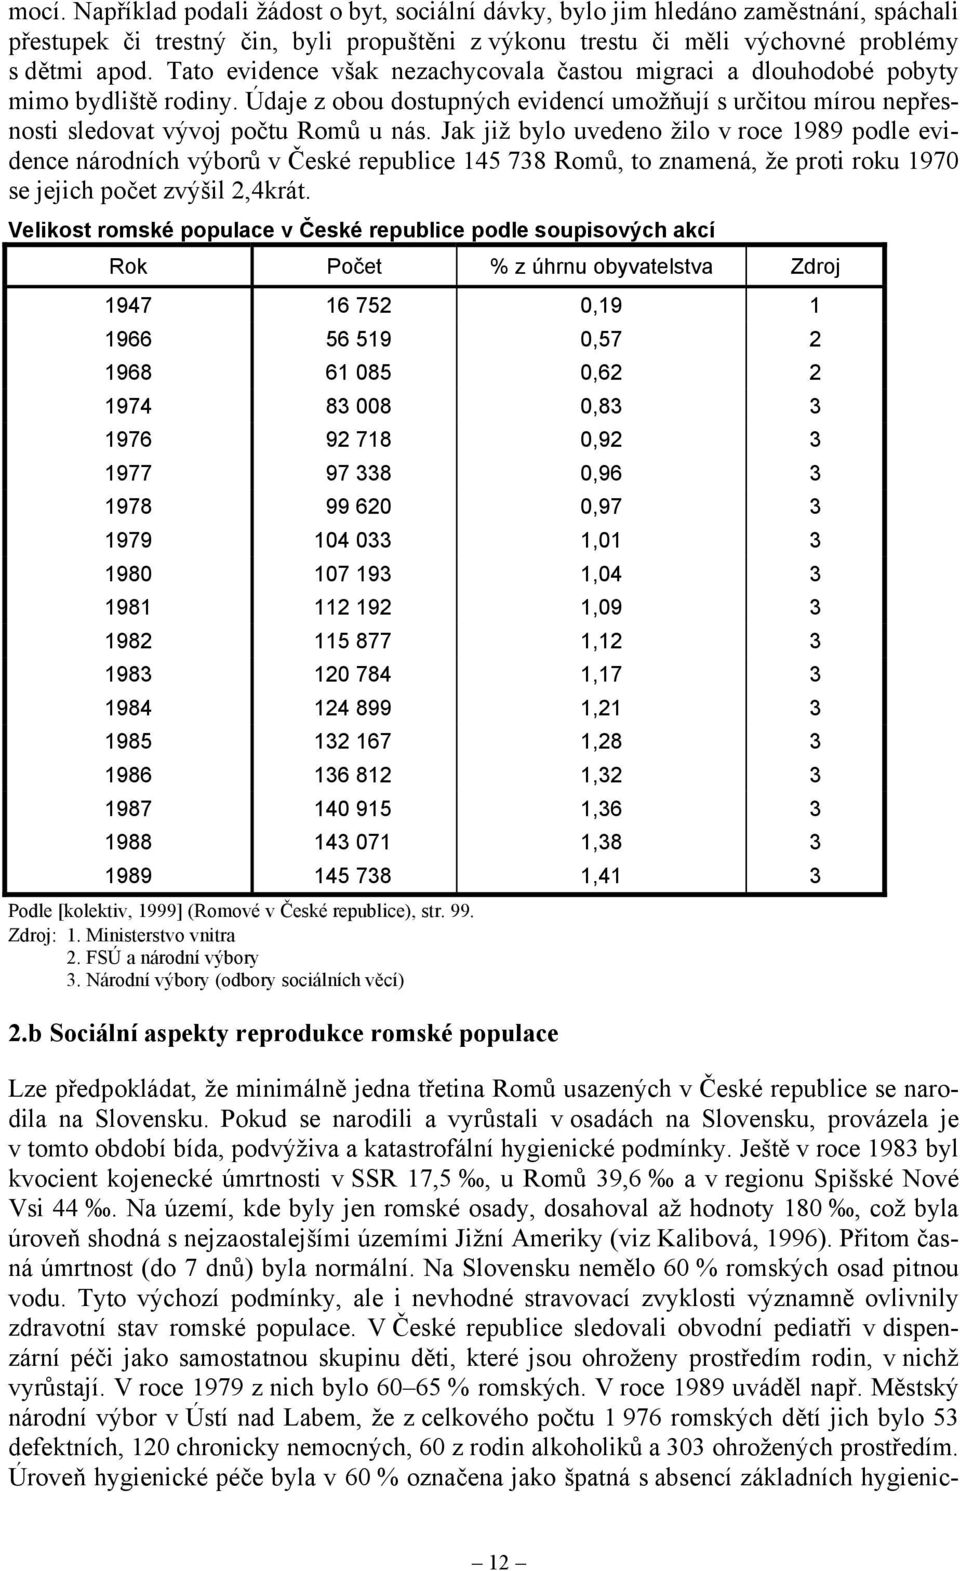 Jak již bylo uvedeno žilo v roce 1989 podle evidence národních výborů v České republice 145 738 Romů, to znamená, že proti roku 1970 se jejich počet zvýšil 2,4krát.